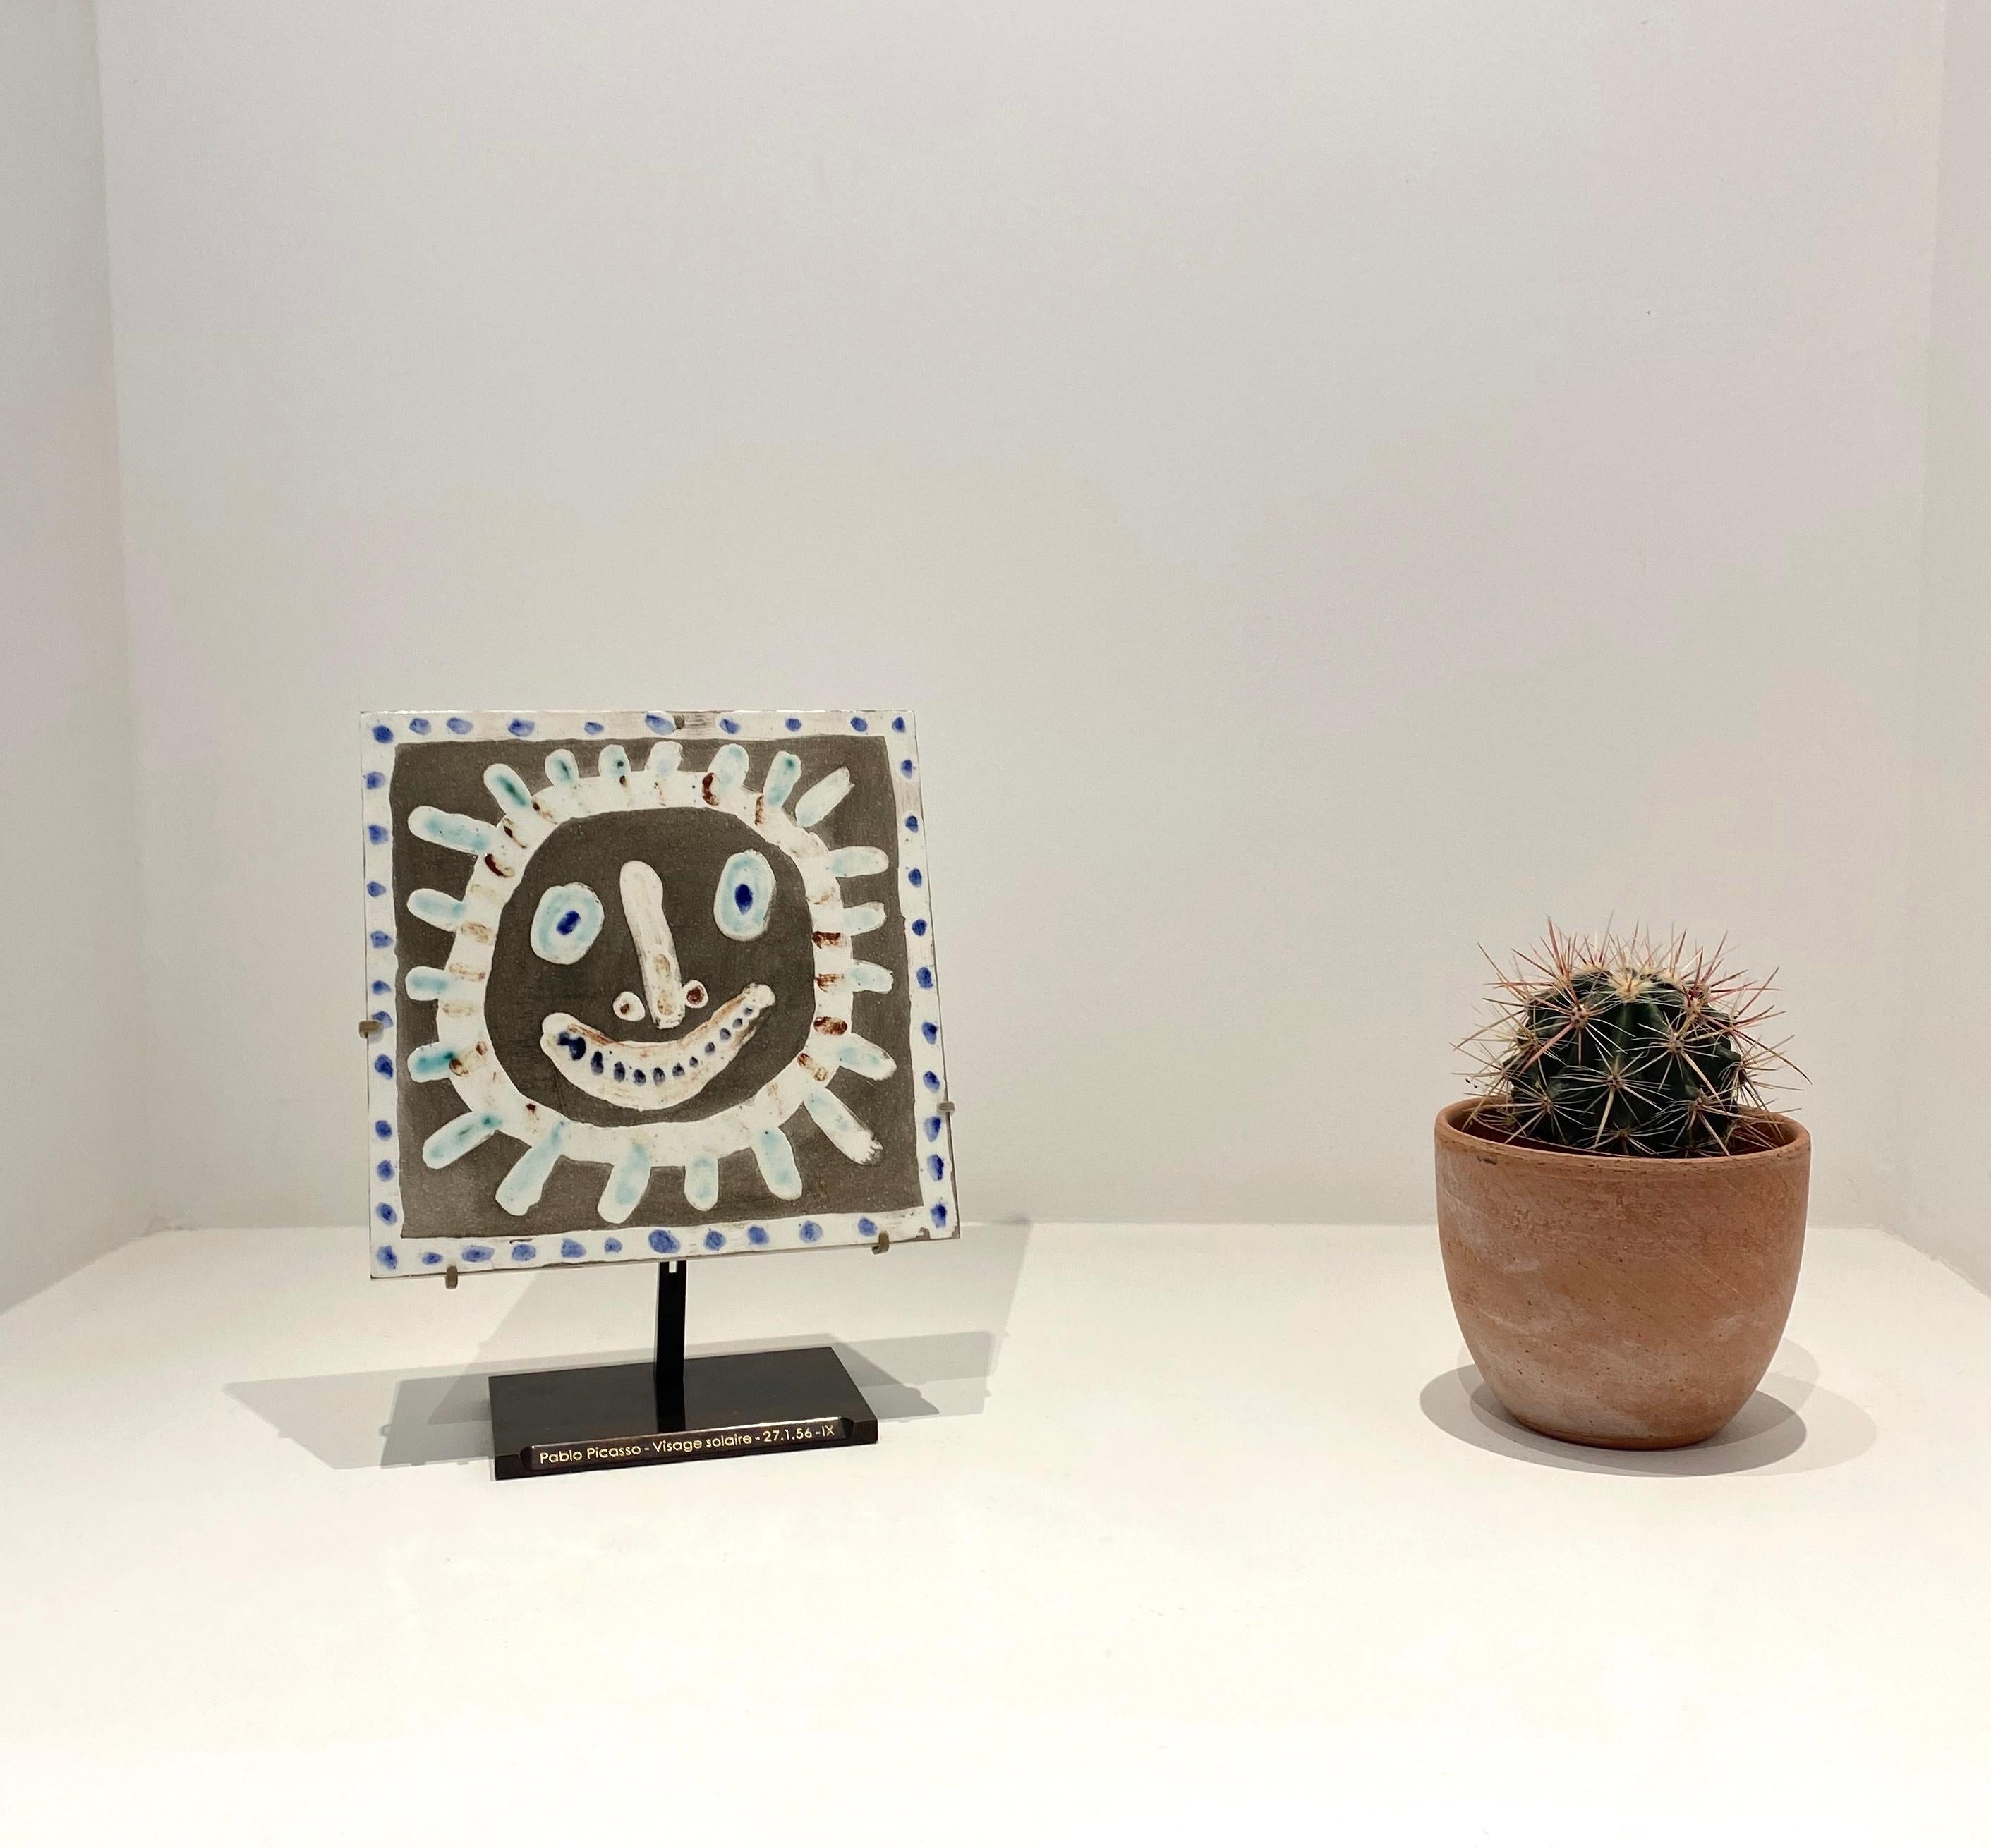 Visage Solaire, Picasso, Unique work, Design, 1950's, Sun face, Ceramic - Sculpture by Pablo Picasso